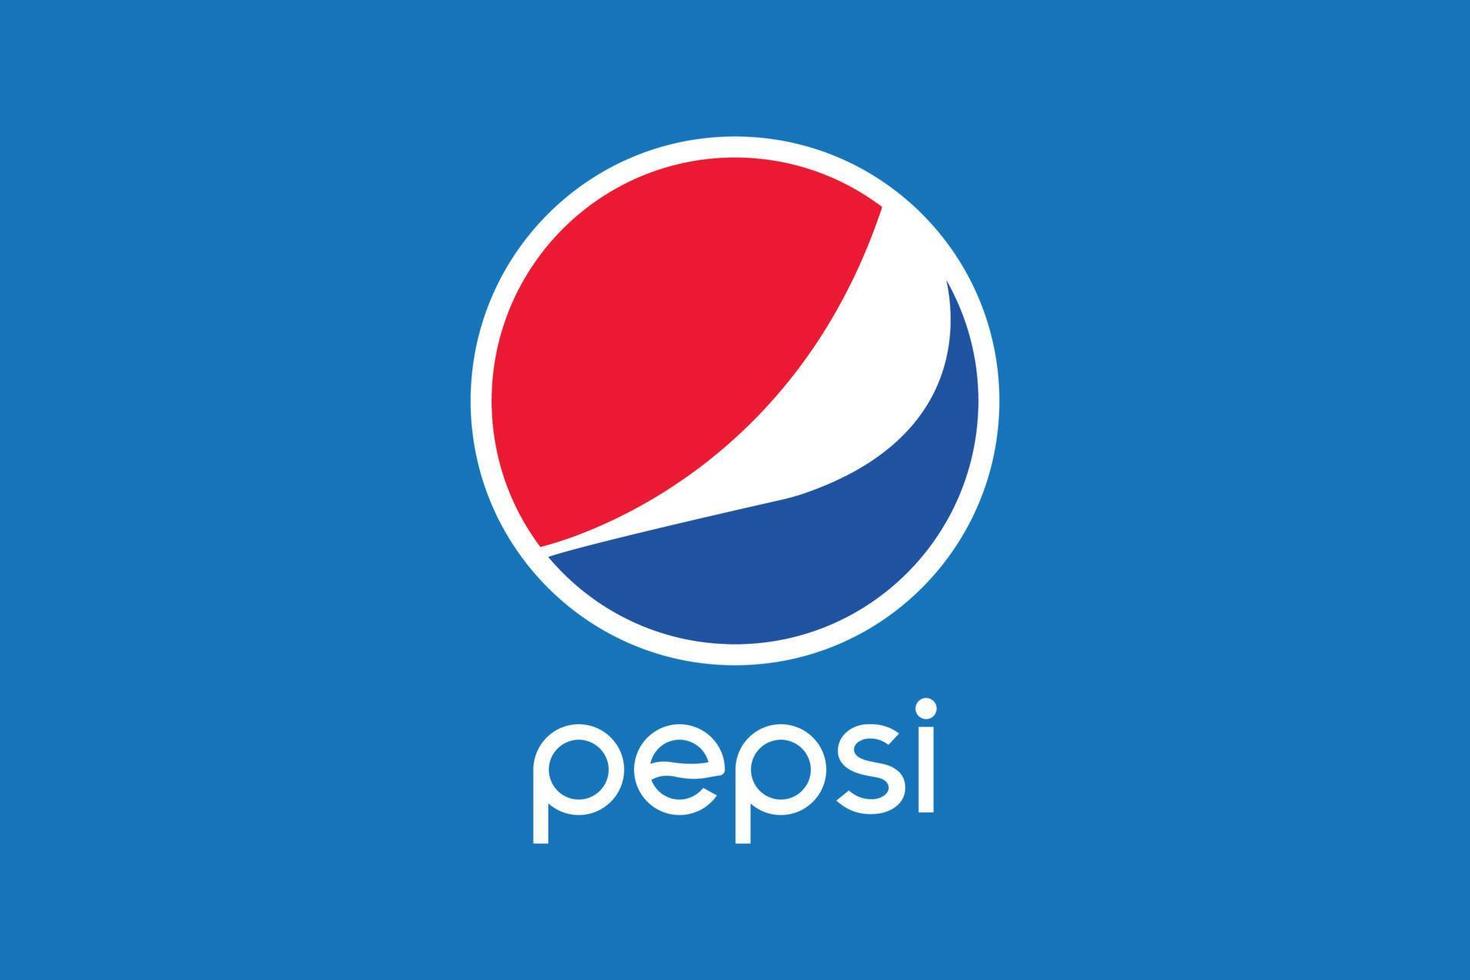 pepsi. logo del marchio di bevande popolari. vinnytsia, ucraina - 16 maggio 202 vettore